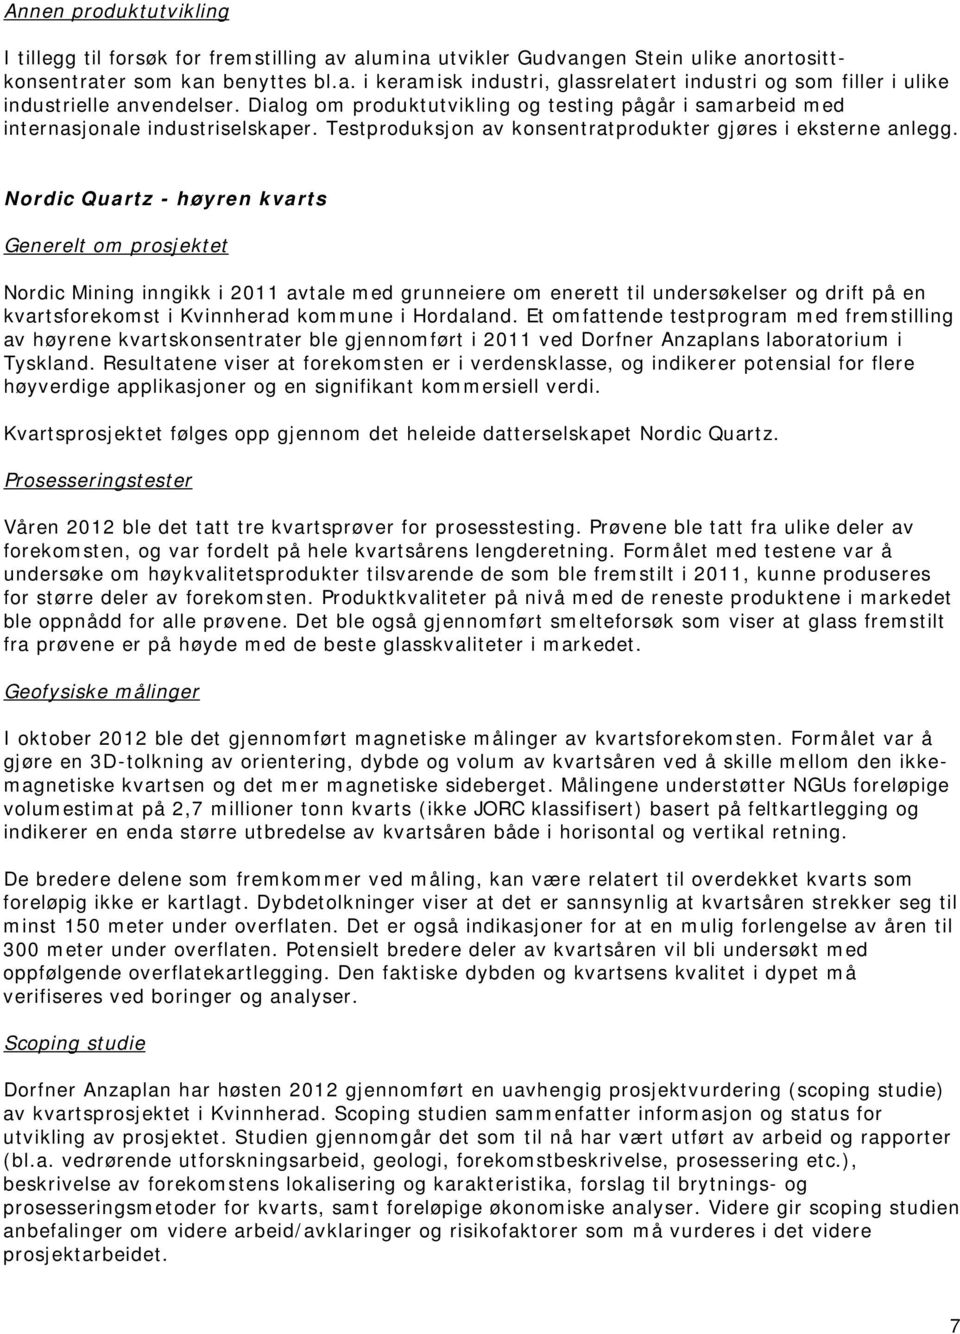 Nordic Quartz - høyren kvarts Generelt om prosjektet Nordic Mining inngikk i 2011 avtale med grunneiere om enerett til undersøkelser og drift på en kvartsforekomst i Kvinnherad kommune i Hordaland.